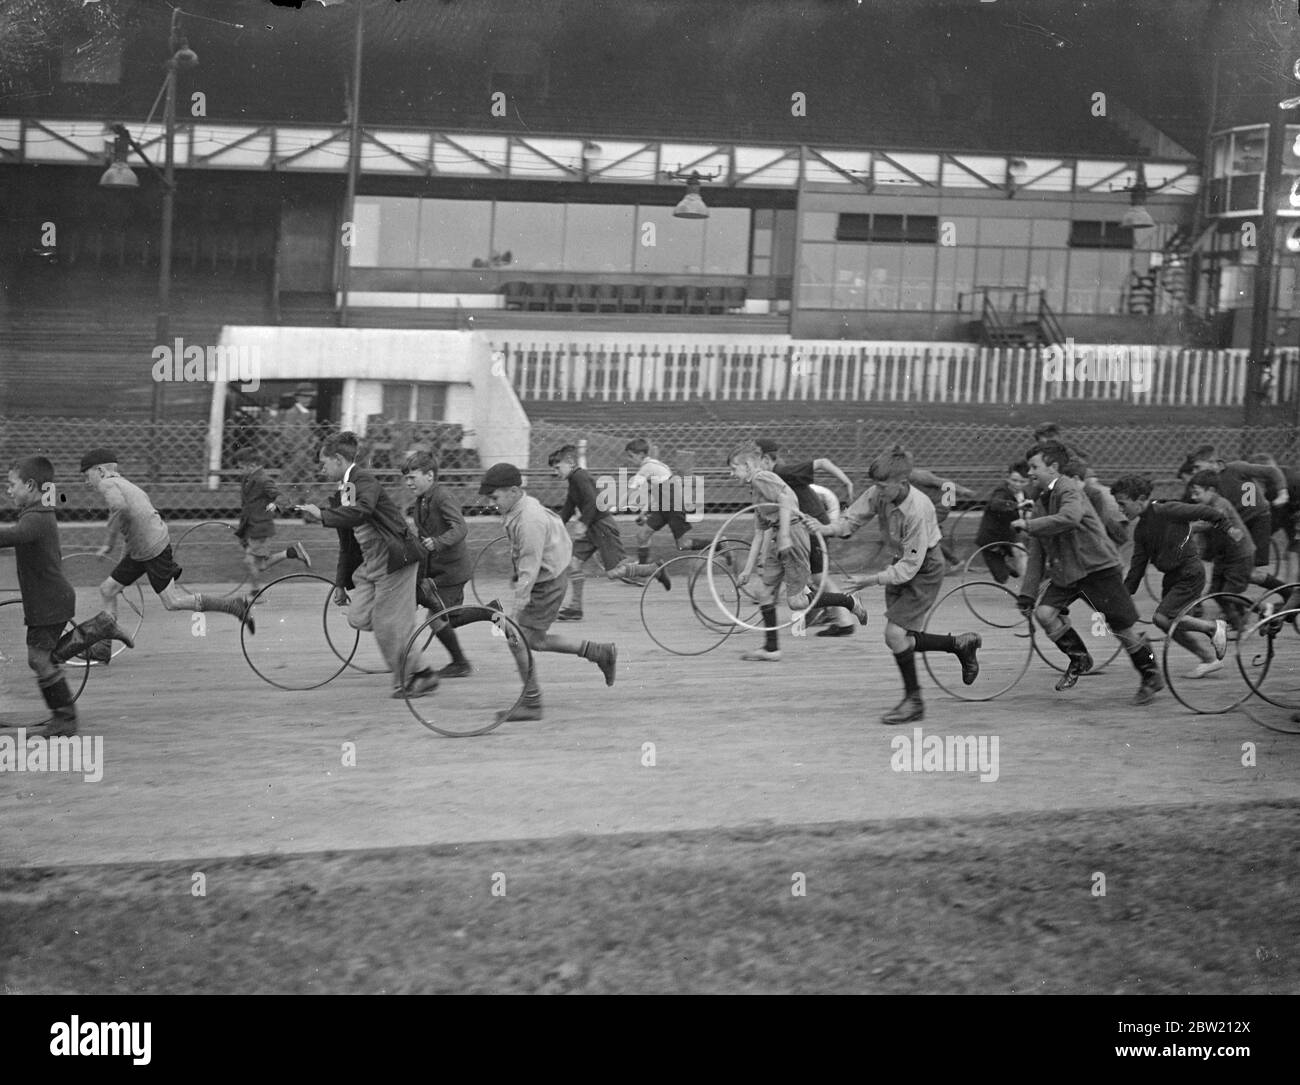 Reifen wirbeln um West Ham Stadium von ihren Besitzern verfolgt. Tausende von armen Kindern, würden Geschwindigkeit Dämonen, eingedrungen West Ham Stadium, Heimat von Windhund und Speedway Rennen für das jährliche Rennen dort nächste Woche stattfinden zu üben. 10 Juli 1937 Stockfoto